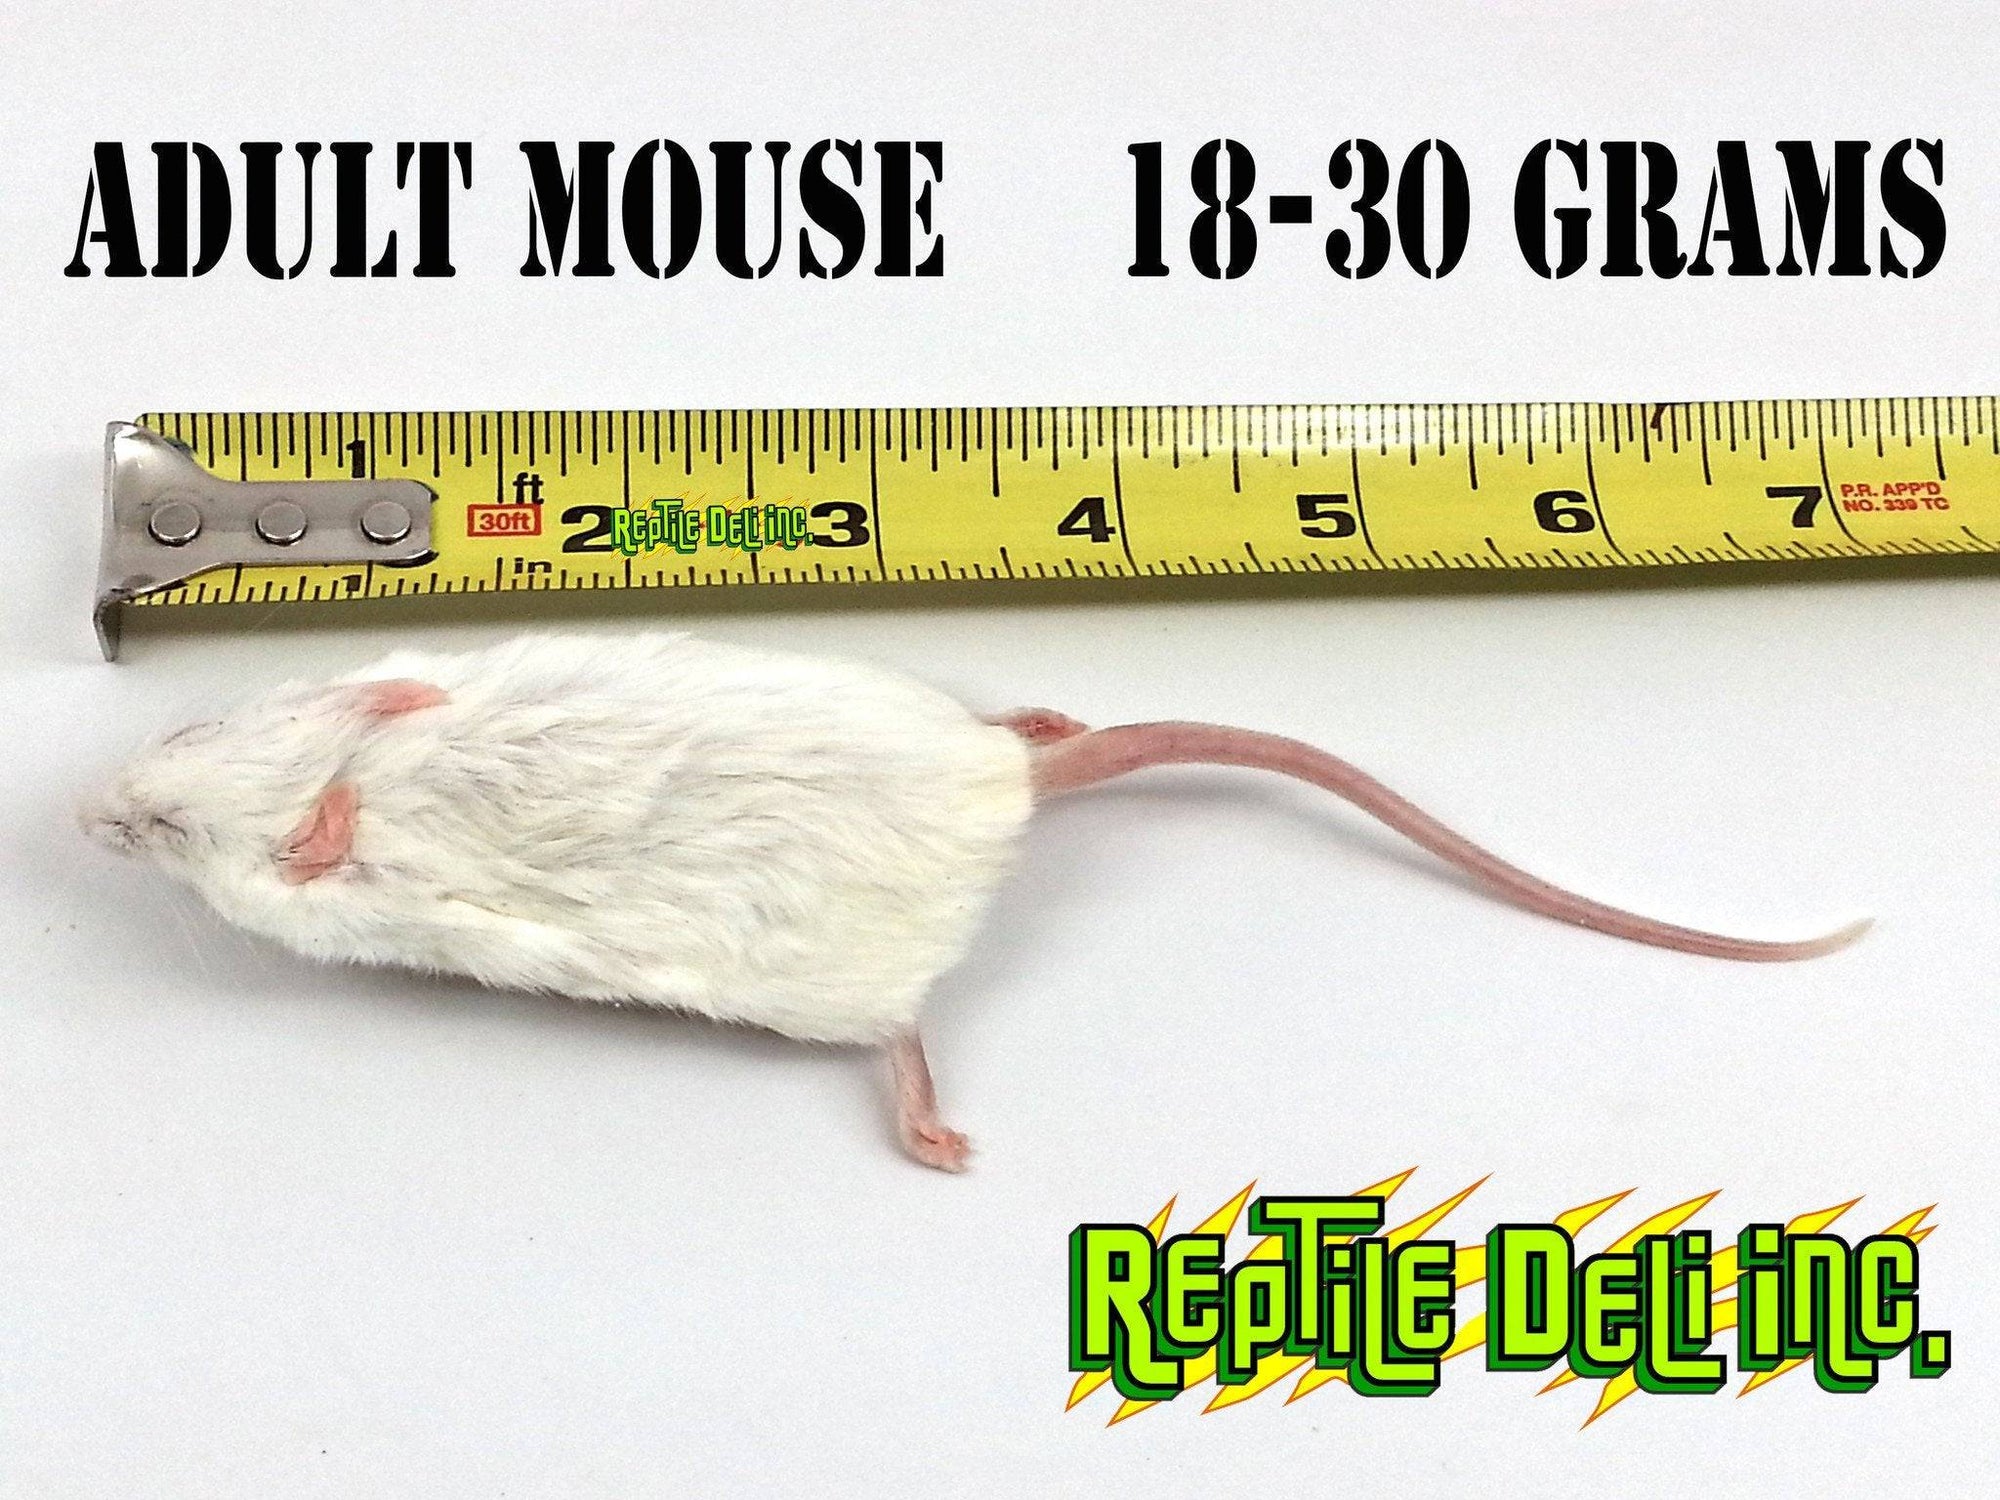 Frozen Mouse - Adult - Reptile Deli Inc.